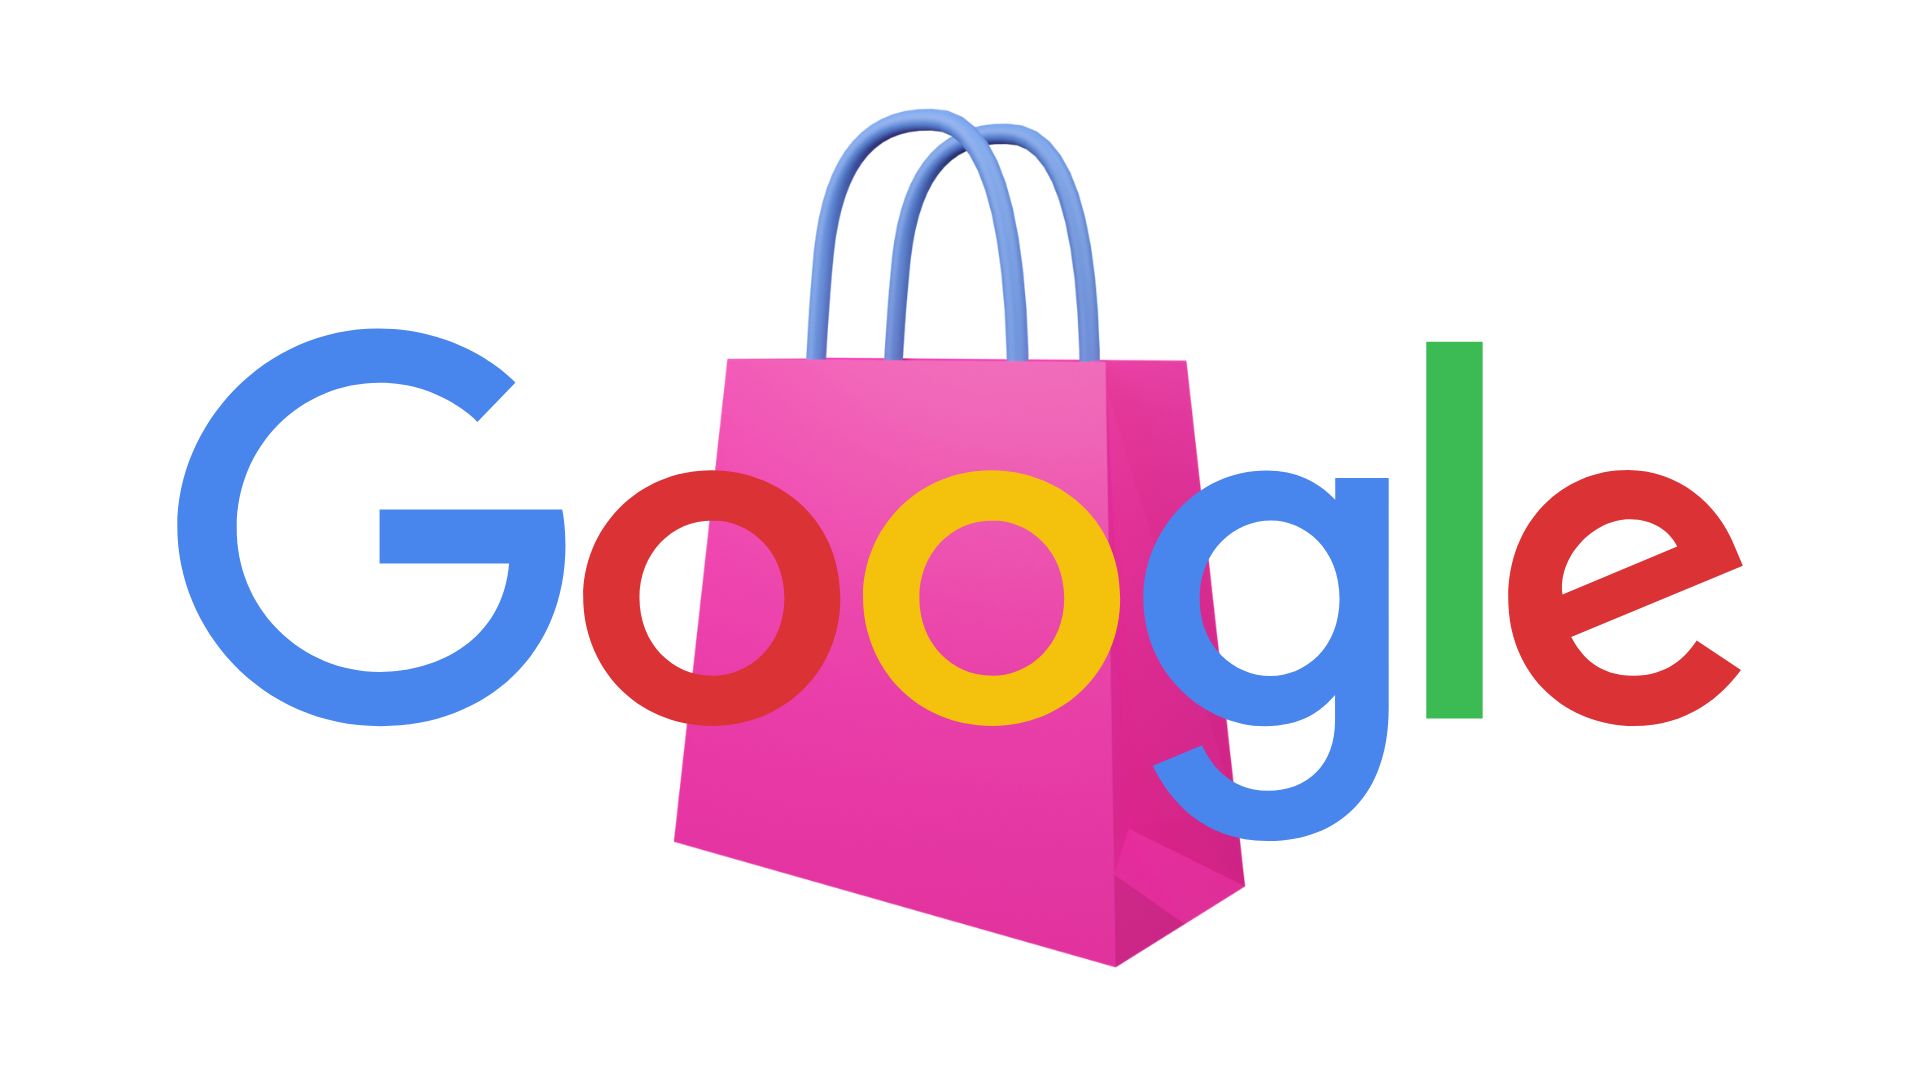 Google Shopping – jak dodać produkty do zakładki zakupy Google?